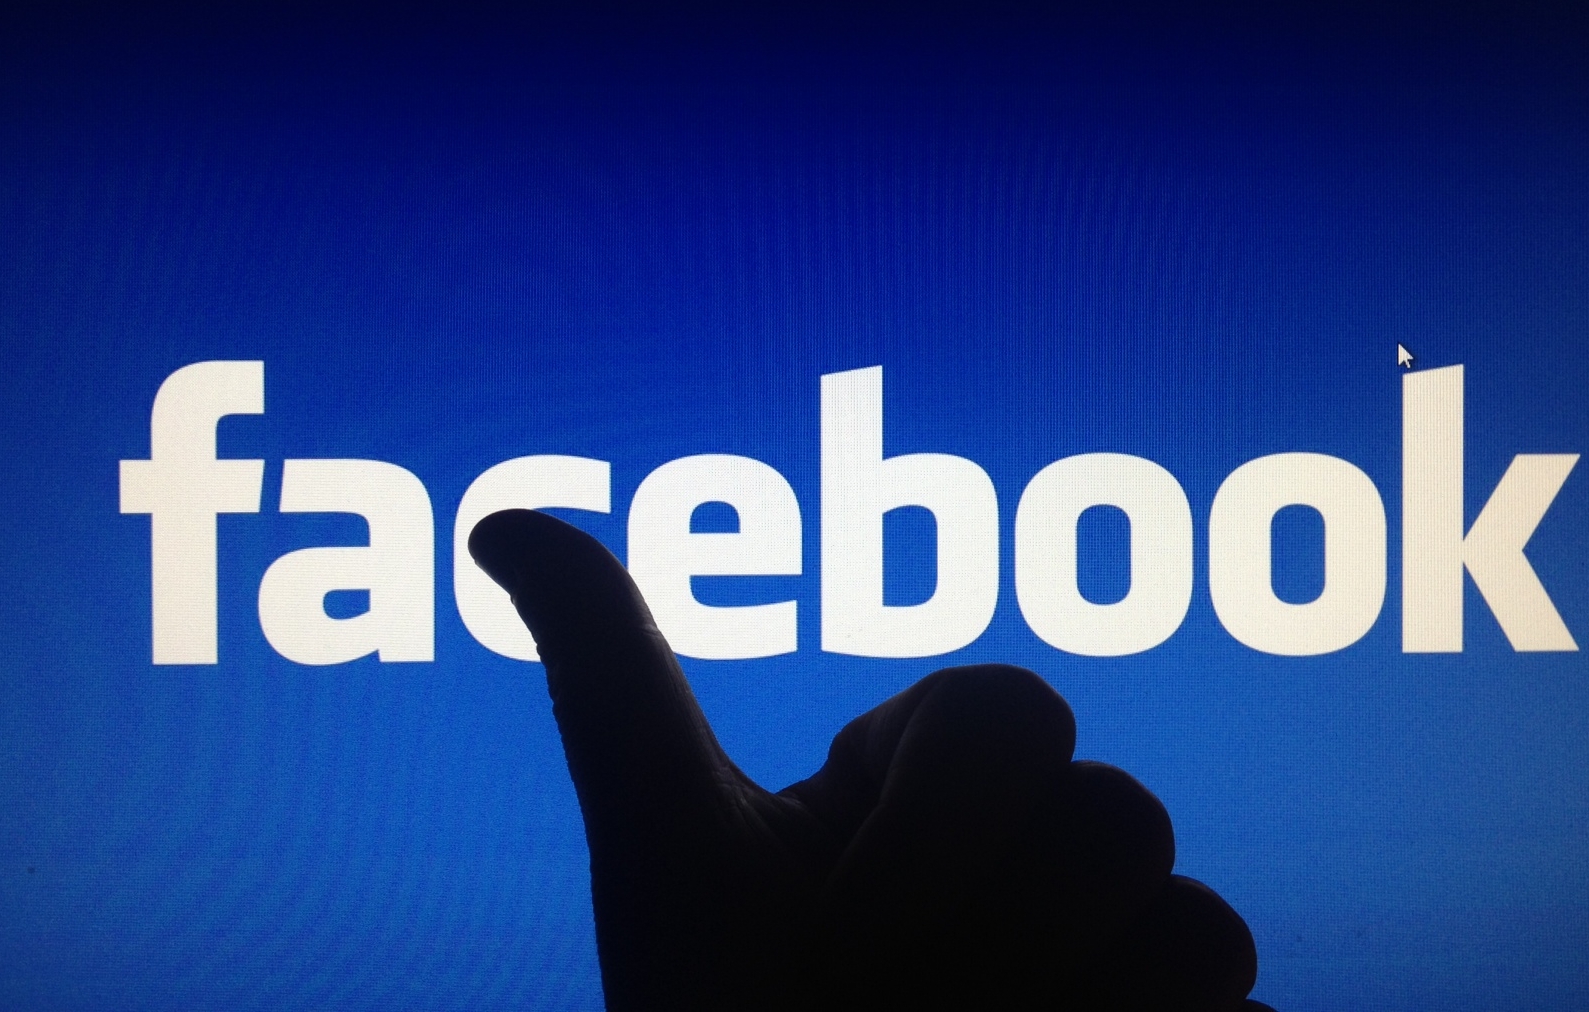 Facebook-Fans kaufen kann ins Auge gehen. Denn das verstößt unter Umständen gegen das Wettbewerbsrecht.